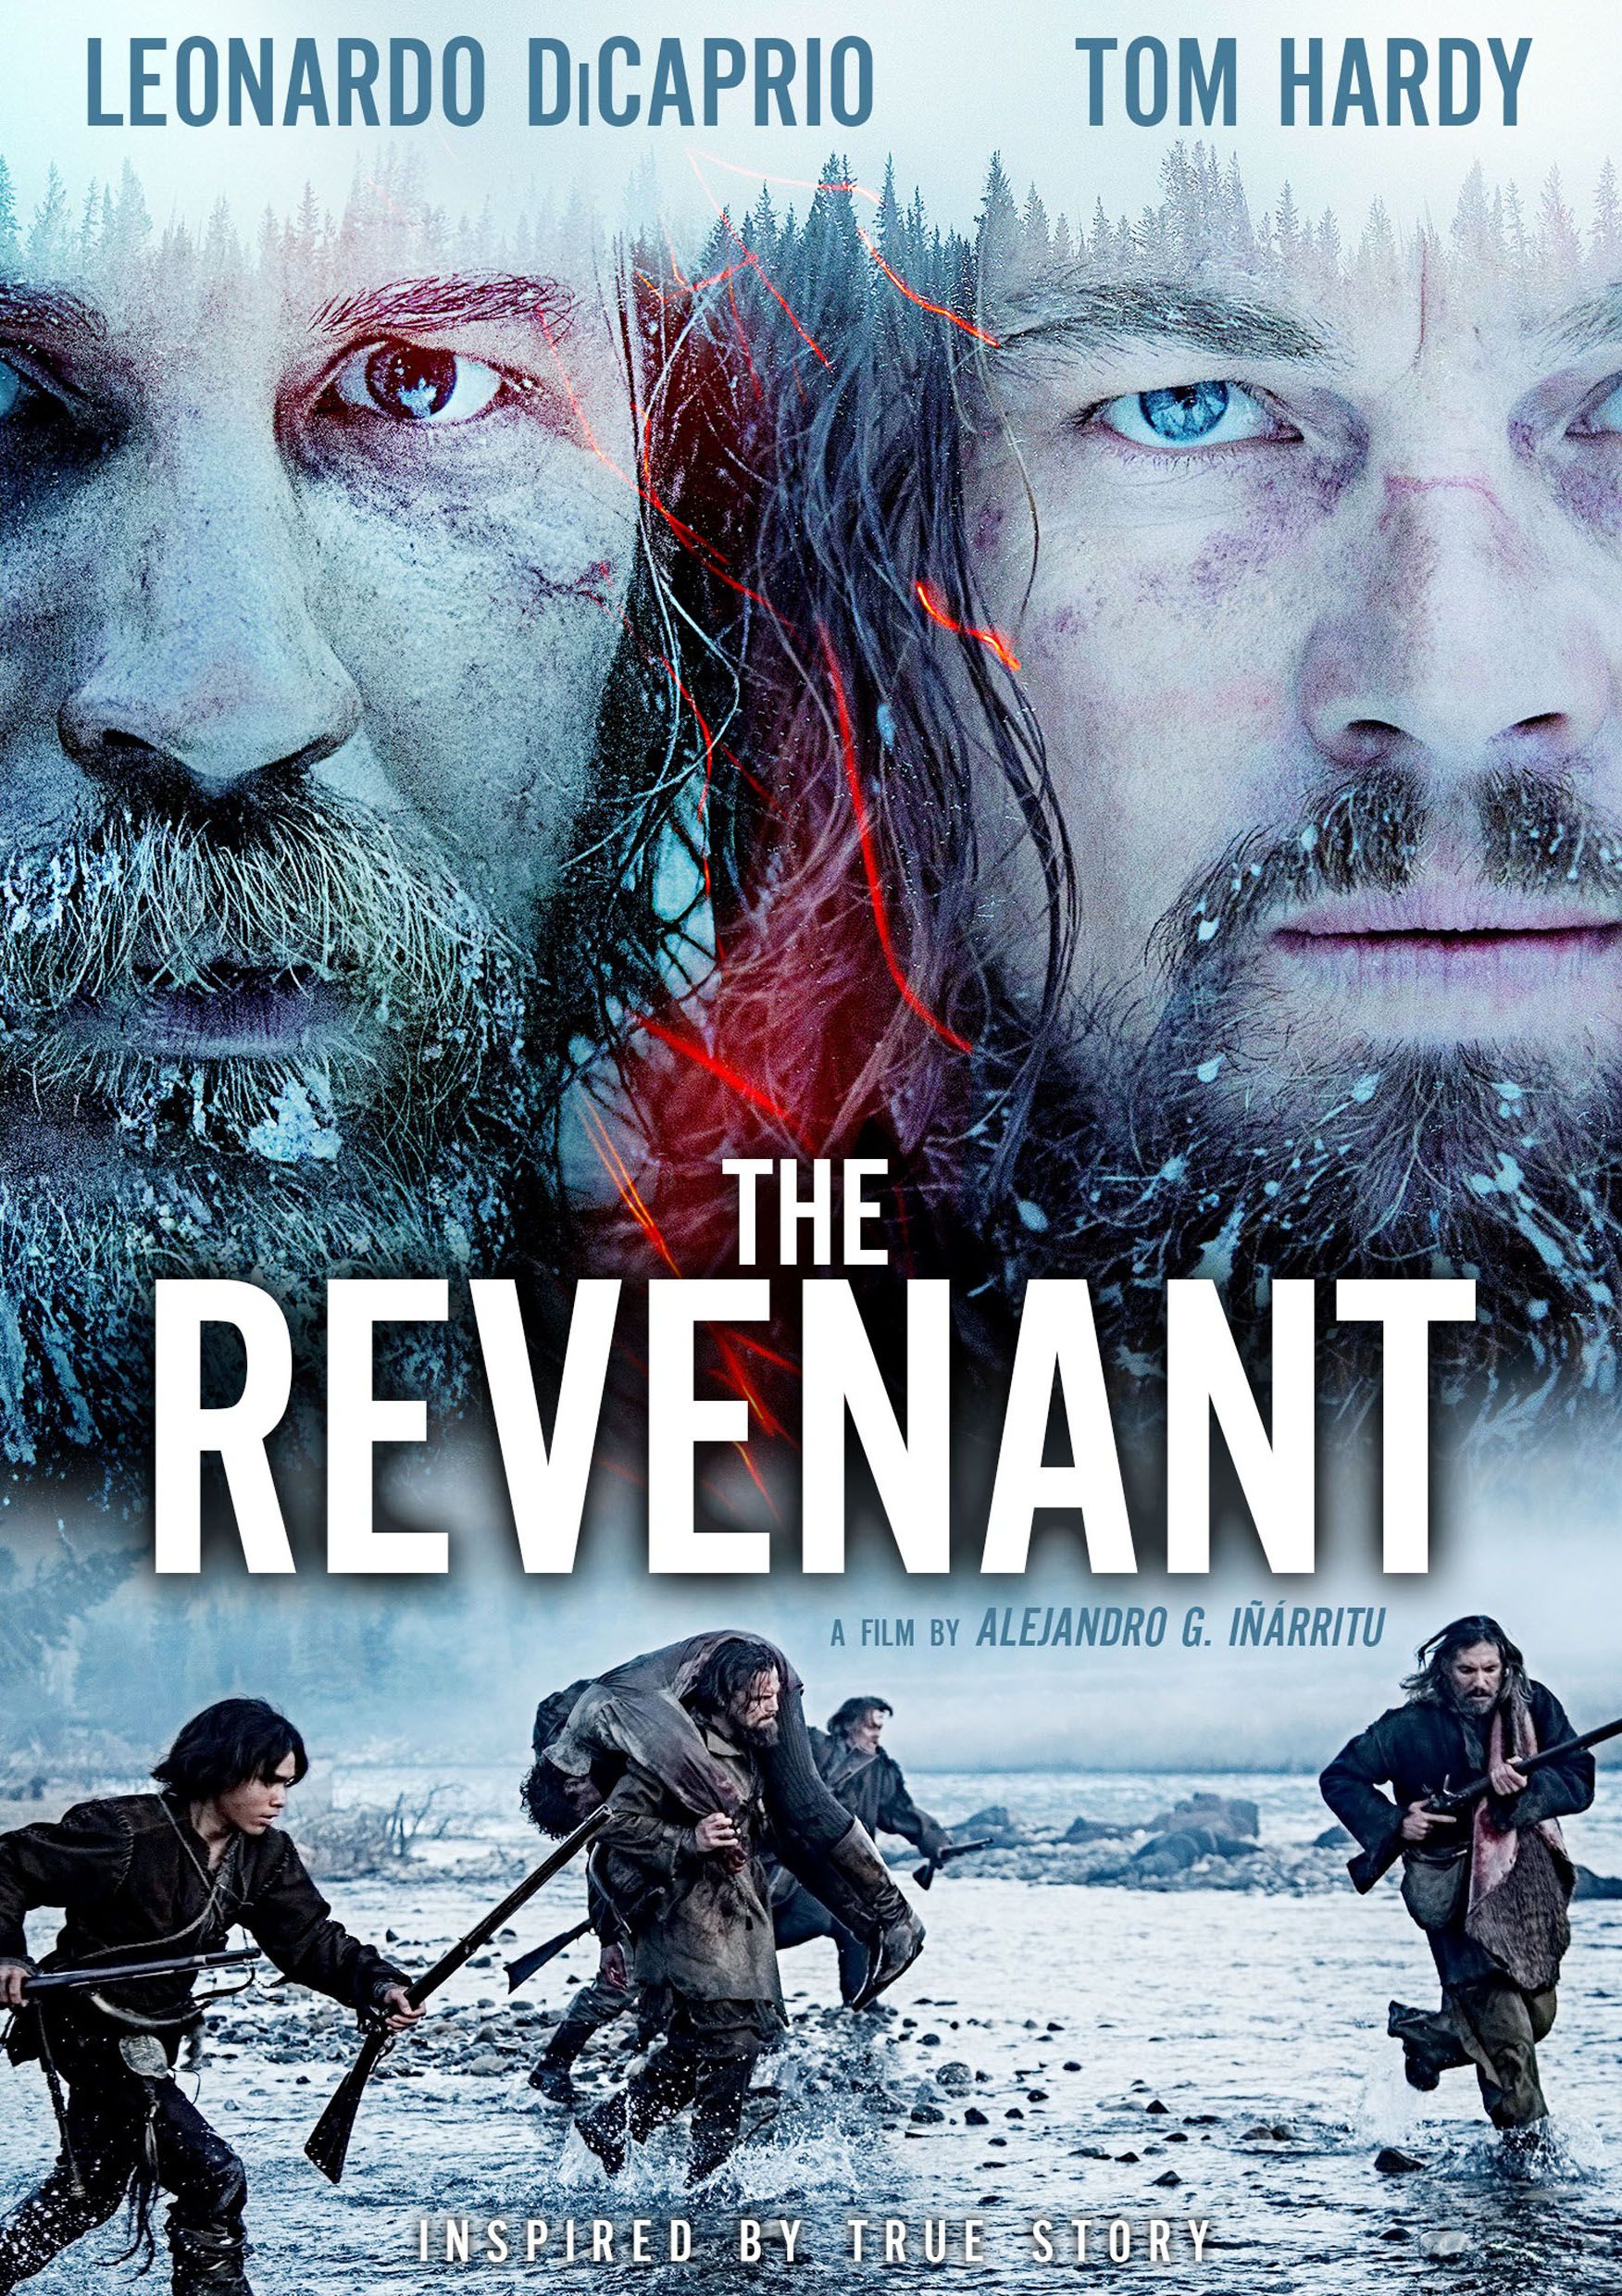 Stiahni si Filmy CZ/SK dabing REVENANT Zmrtvychvstani / The Revenant (2015)(CZ/EN)60fps = CSFD 80%